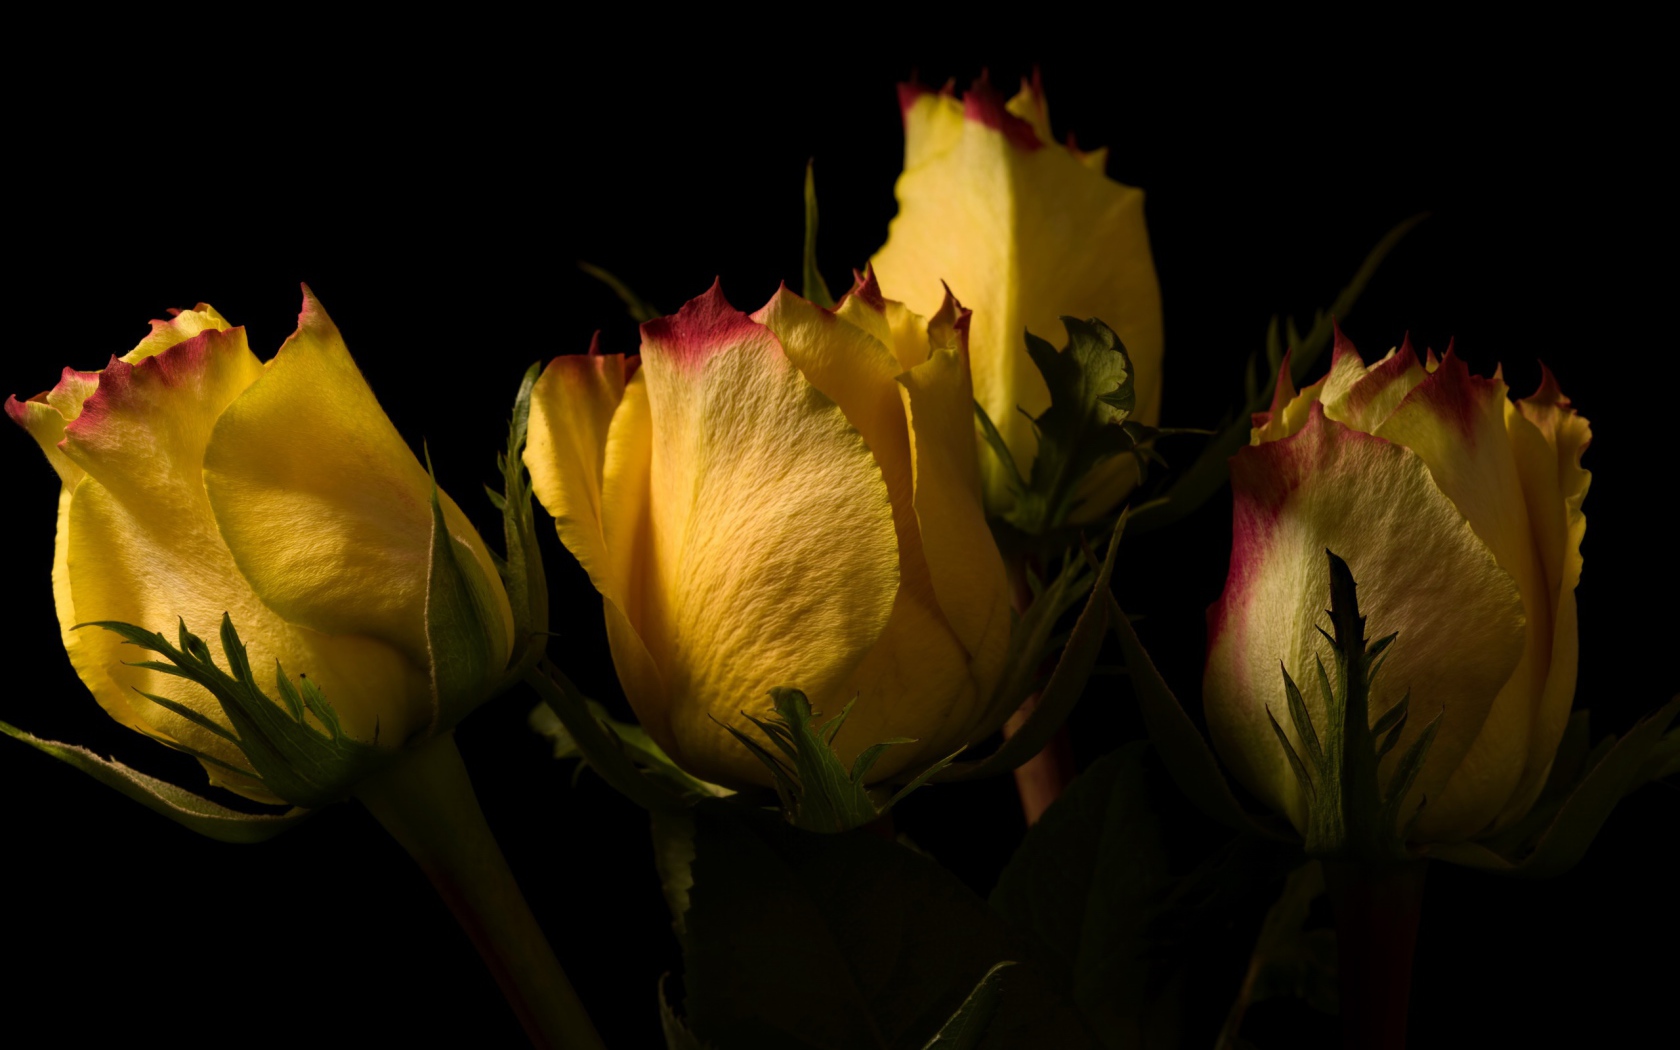 Желтые розы на черном фоне